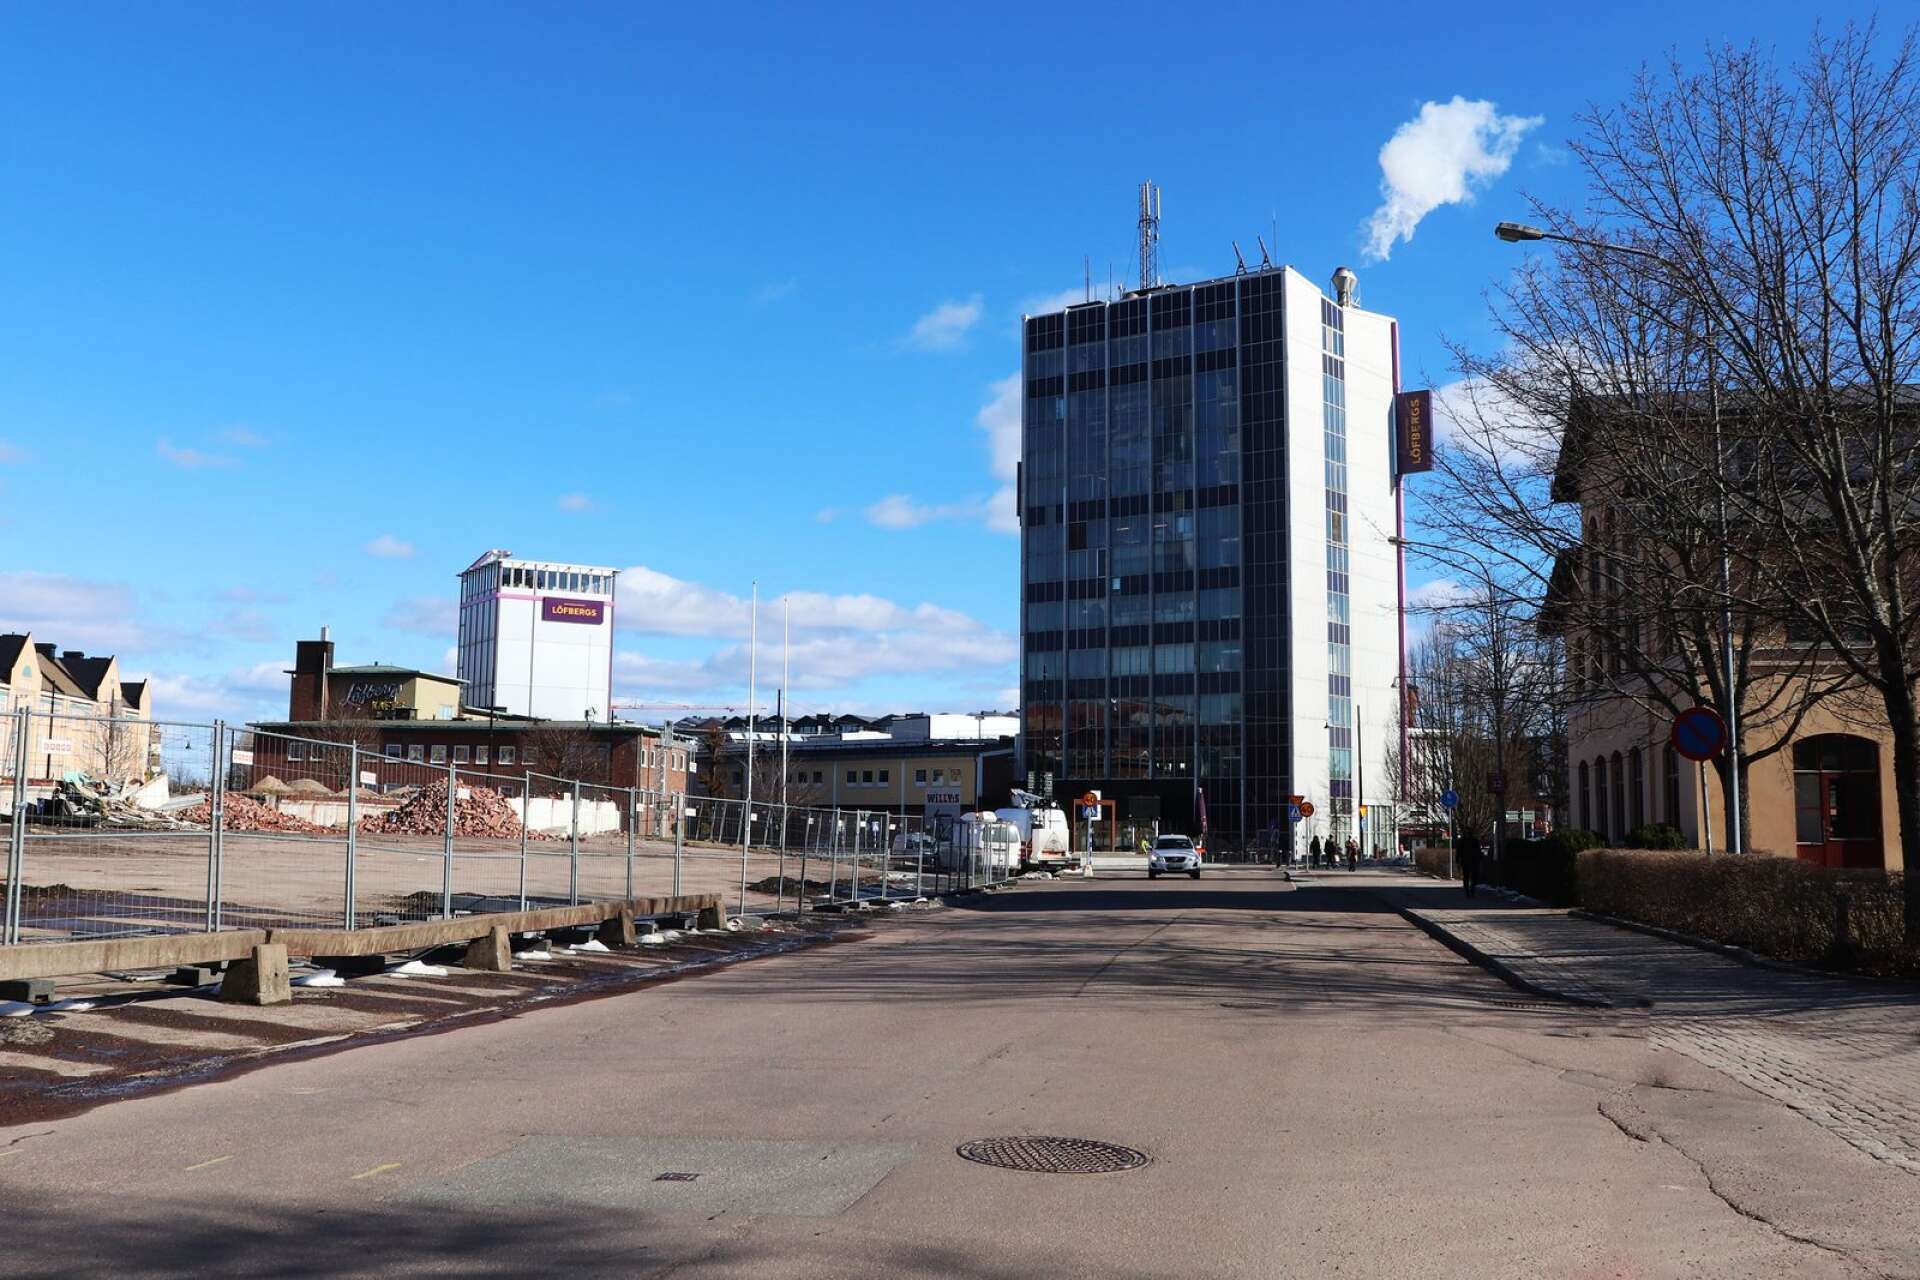 Rosteriet och Expositionshuset har inte rört på sig, men godsterminalen är mitt i en rivningsprocess. Där ska i stället en utbyggnad av Karlstads central få plats.